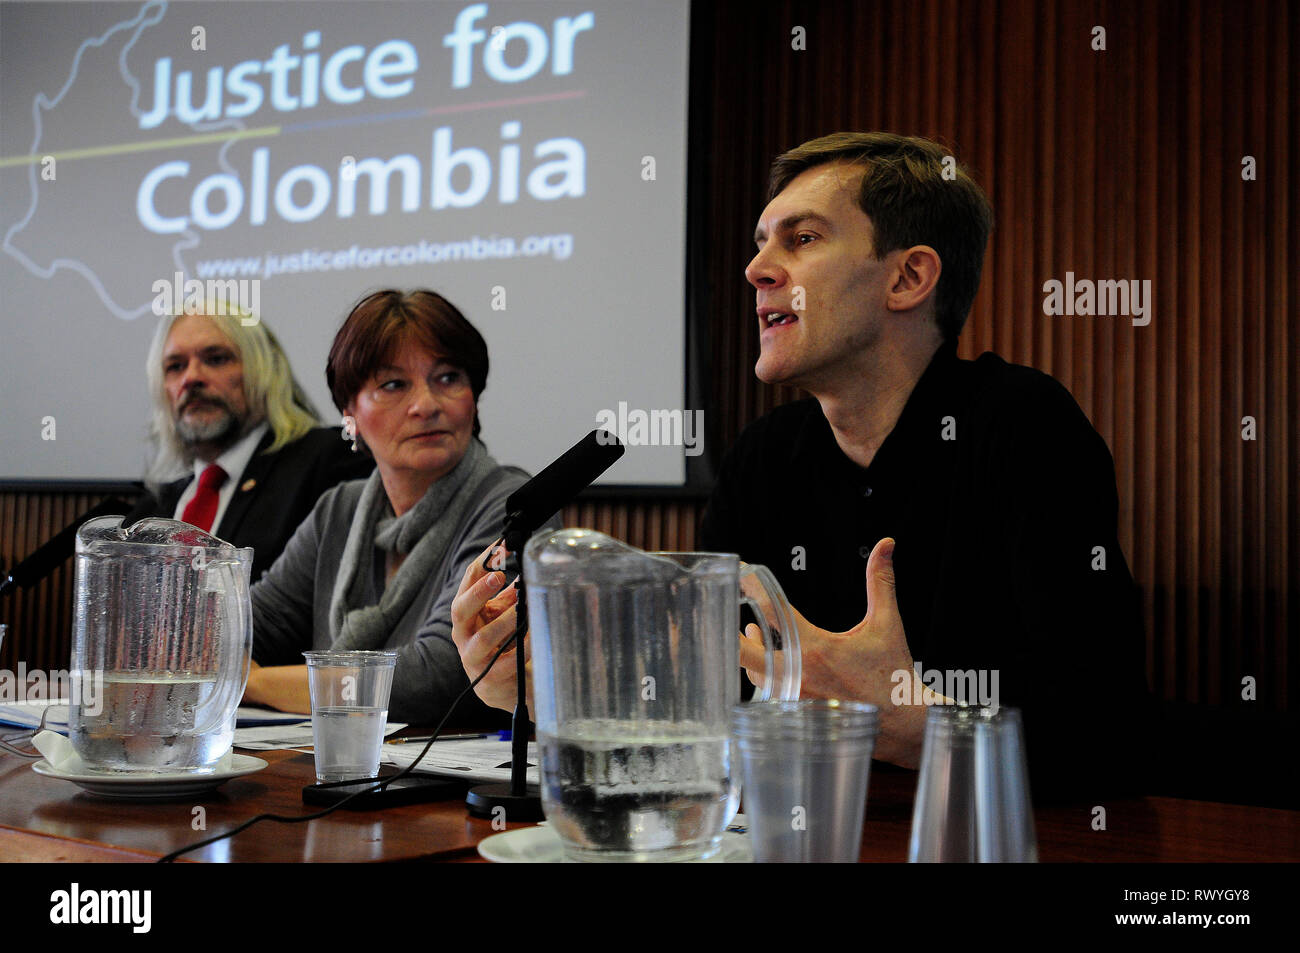 London, England. 29 November, 2014 Seumas Milne, Journalist und Schriftsteller, während ein "Gerechtigkeit für Kolumbien" Workshop an der Latin Americ Stockfoto